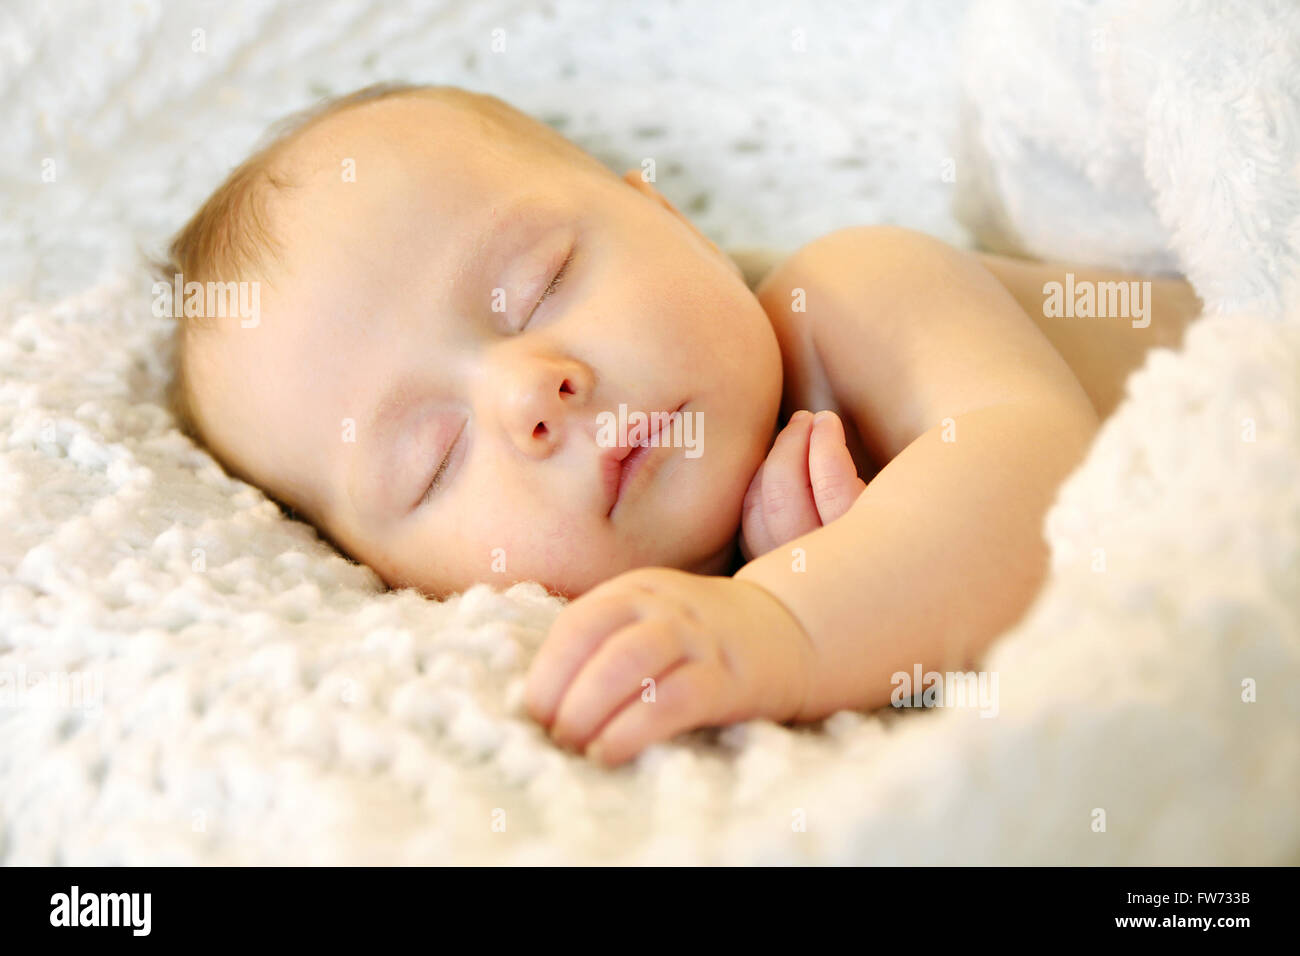 Ein süßes Neugeborenes Kleinkindes Mädchen schläft friedlich, während im warmen weißen Decken gekuschelt Stockfoto